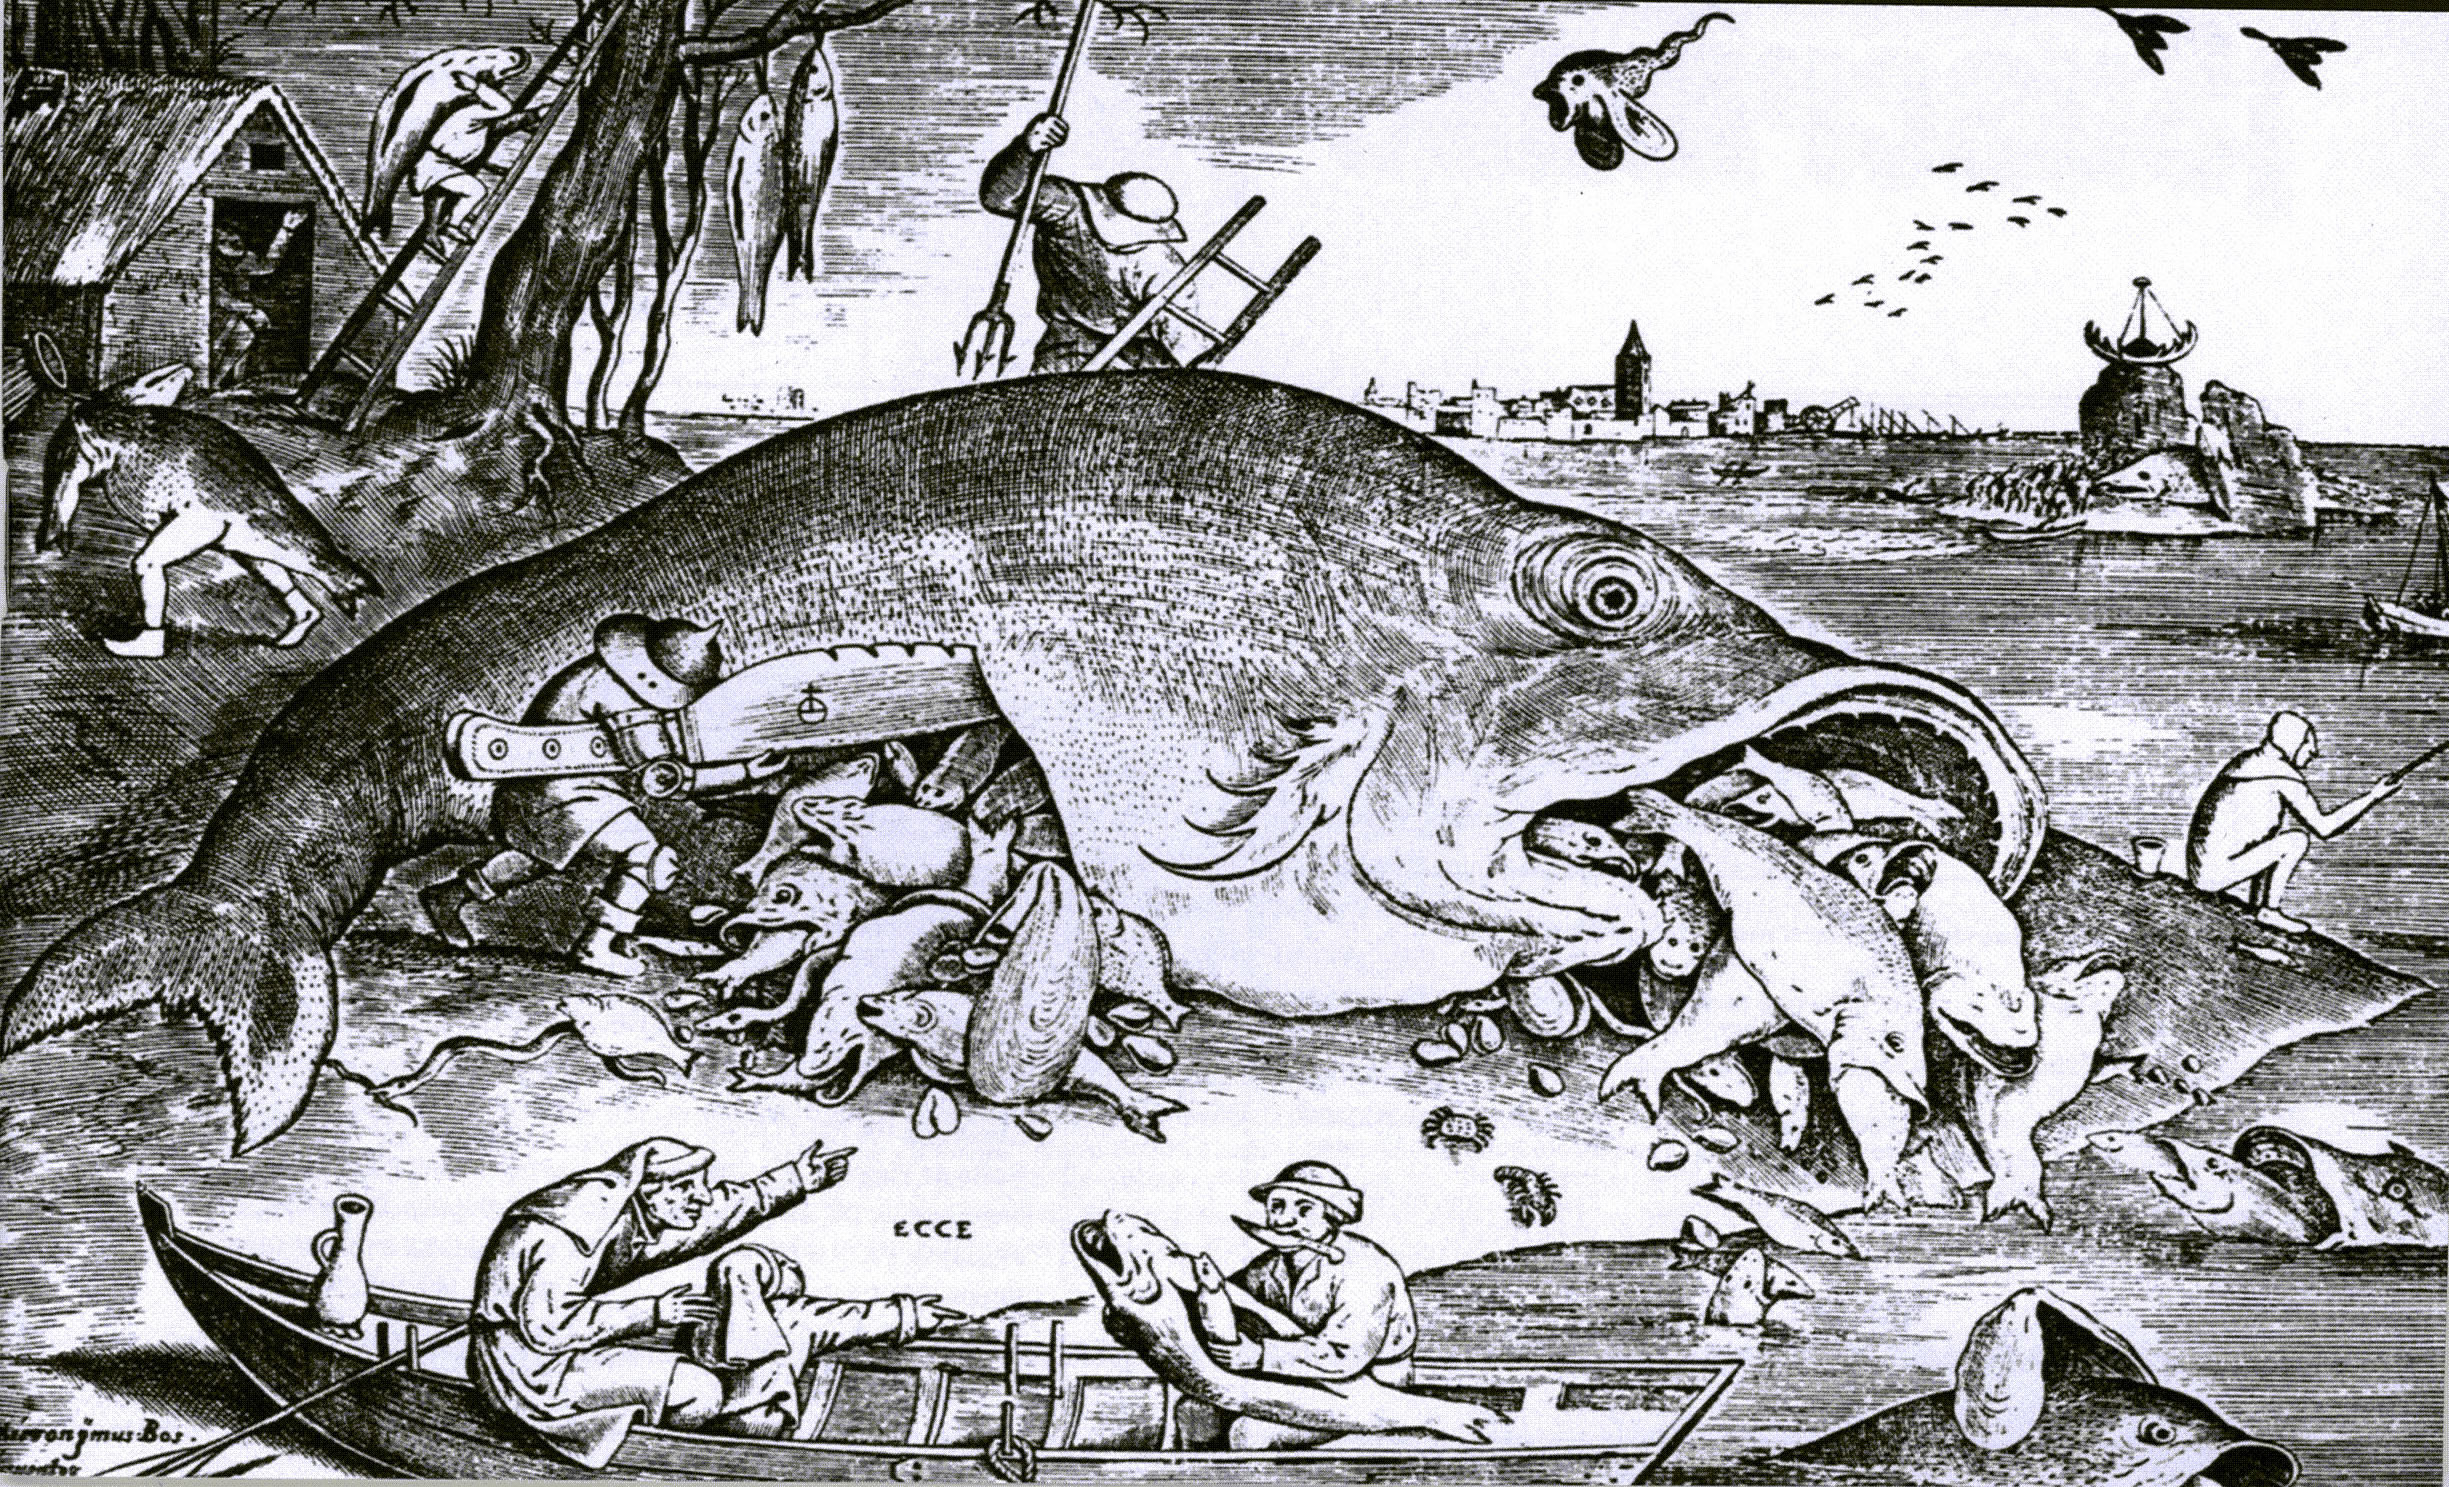 bruegel_parable_of_fish.jpg